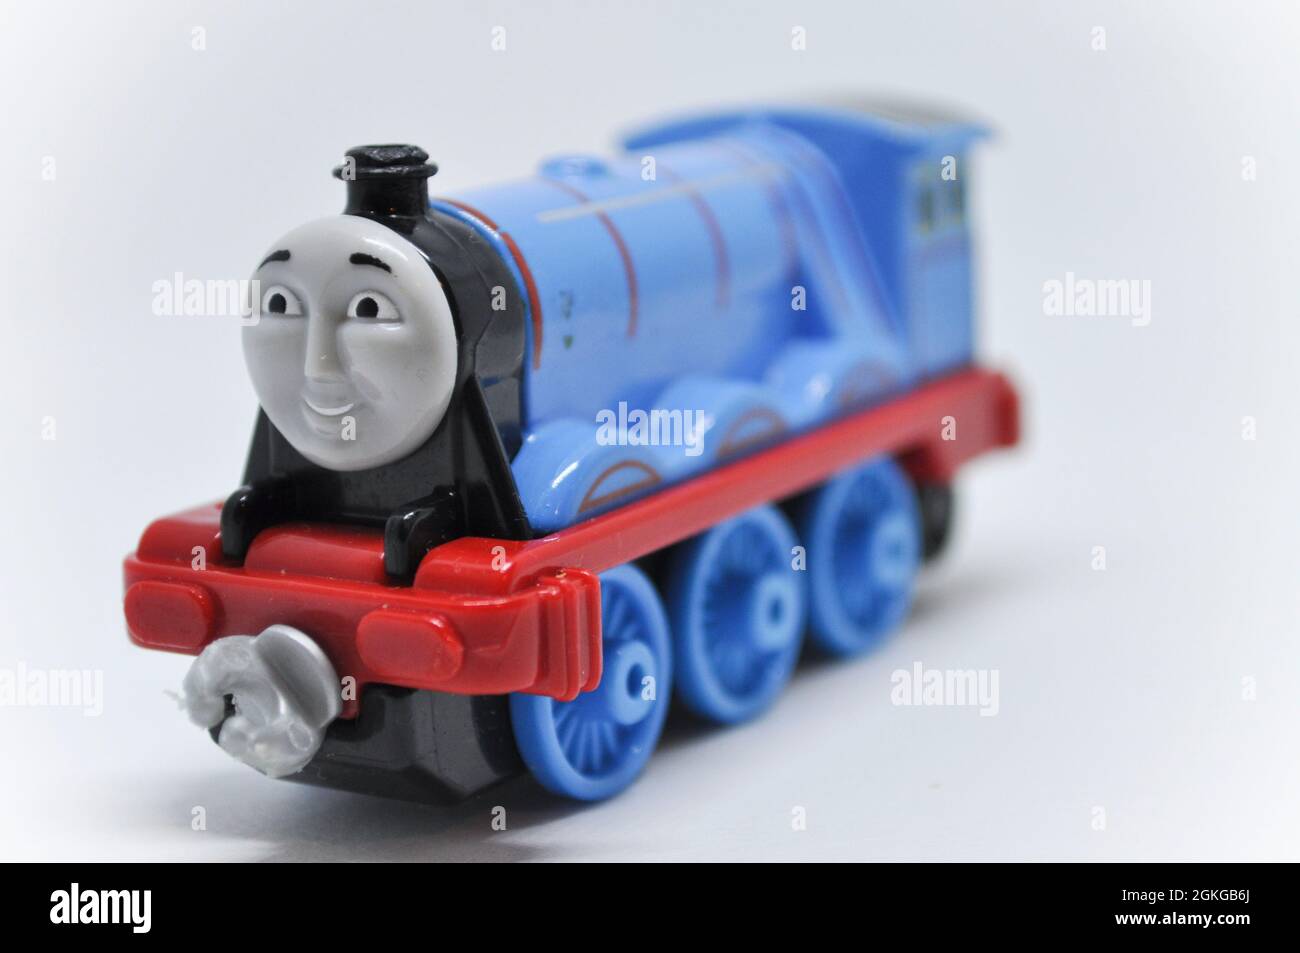 Gordon das Cast-Modell von Thomas The Tank Engine auf weißem Hintergrund. Stockfoto